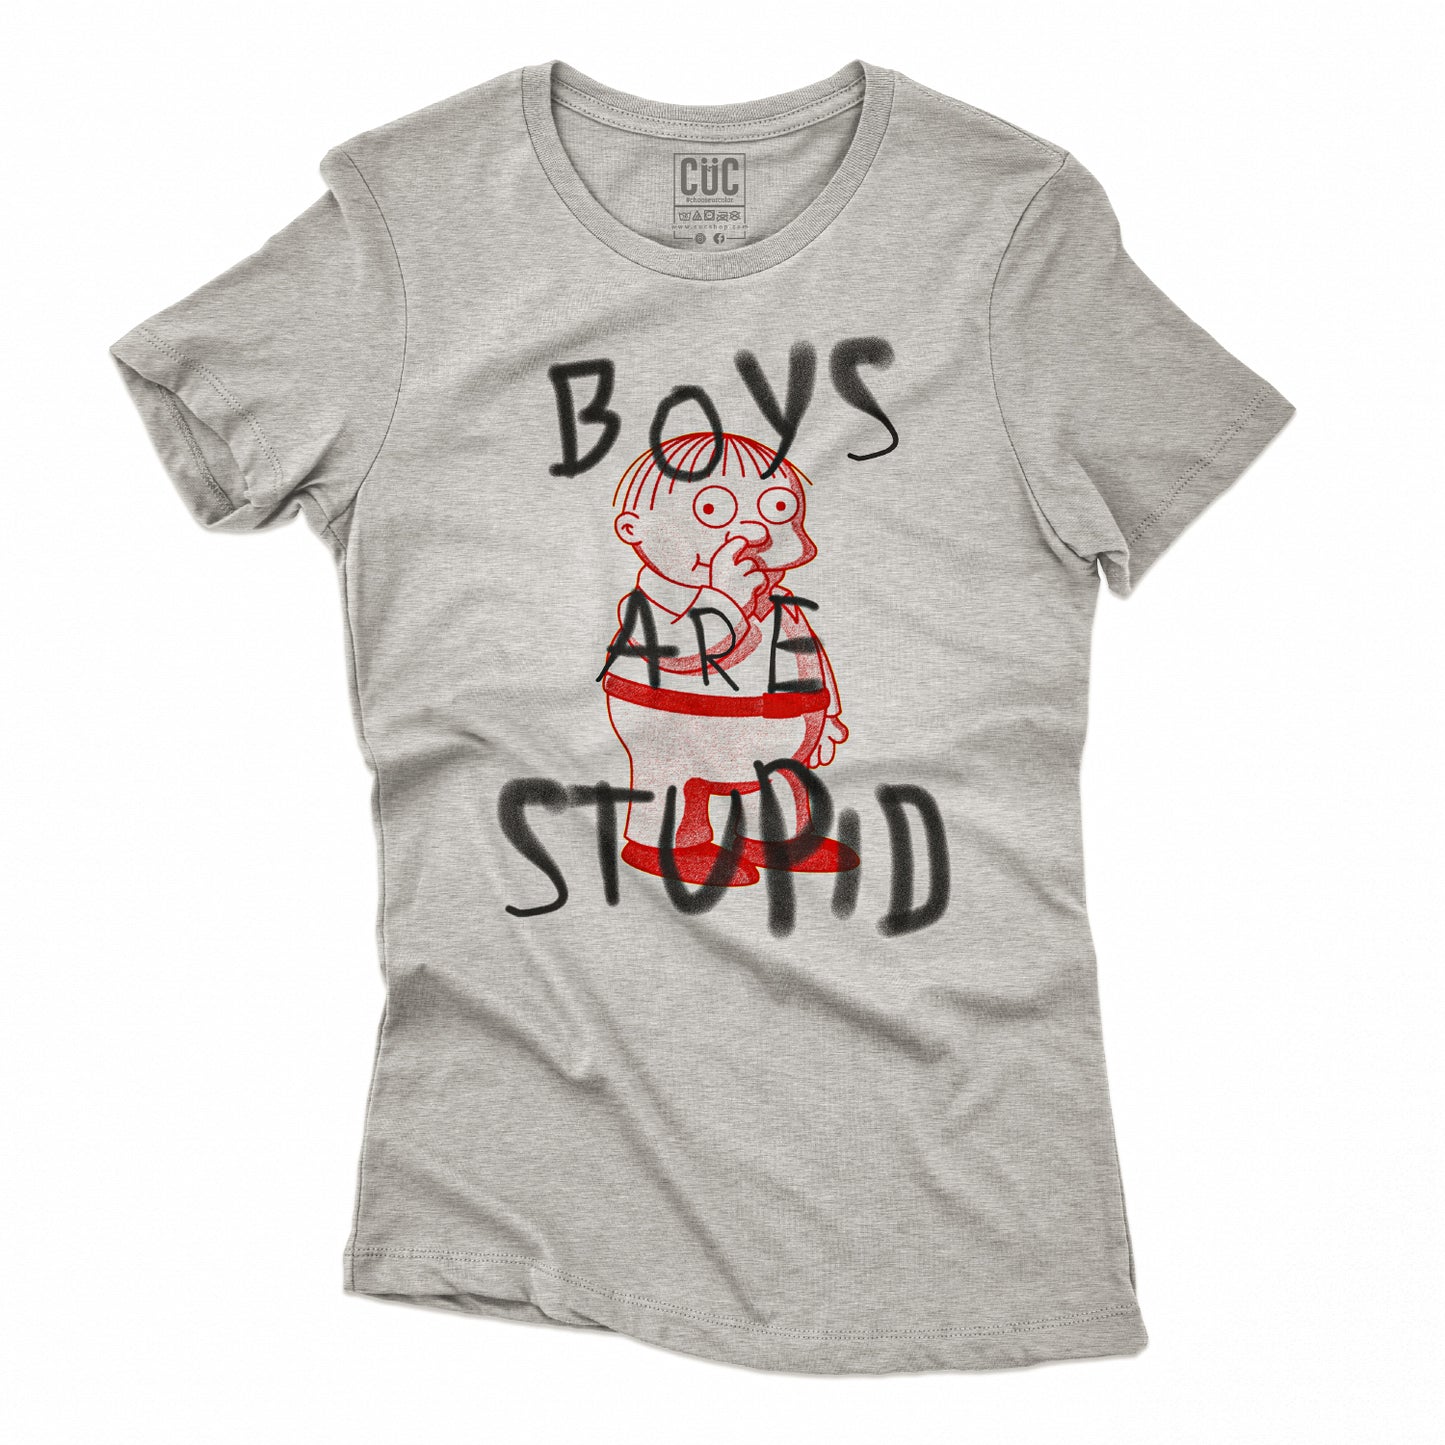 CUC T-Shirt BOYS ARE STUPID 2 - Divertente  #chooseurcolor